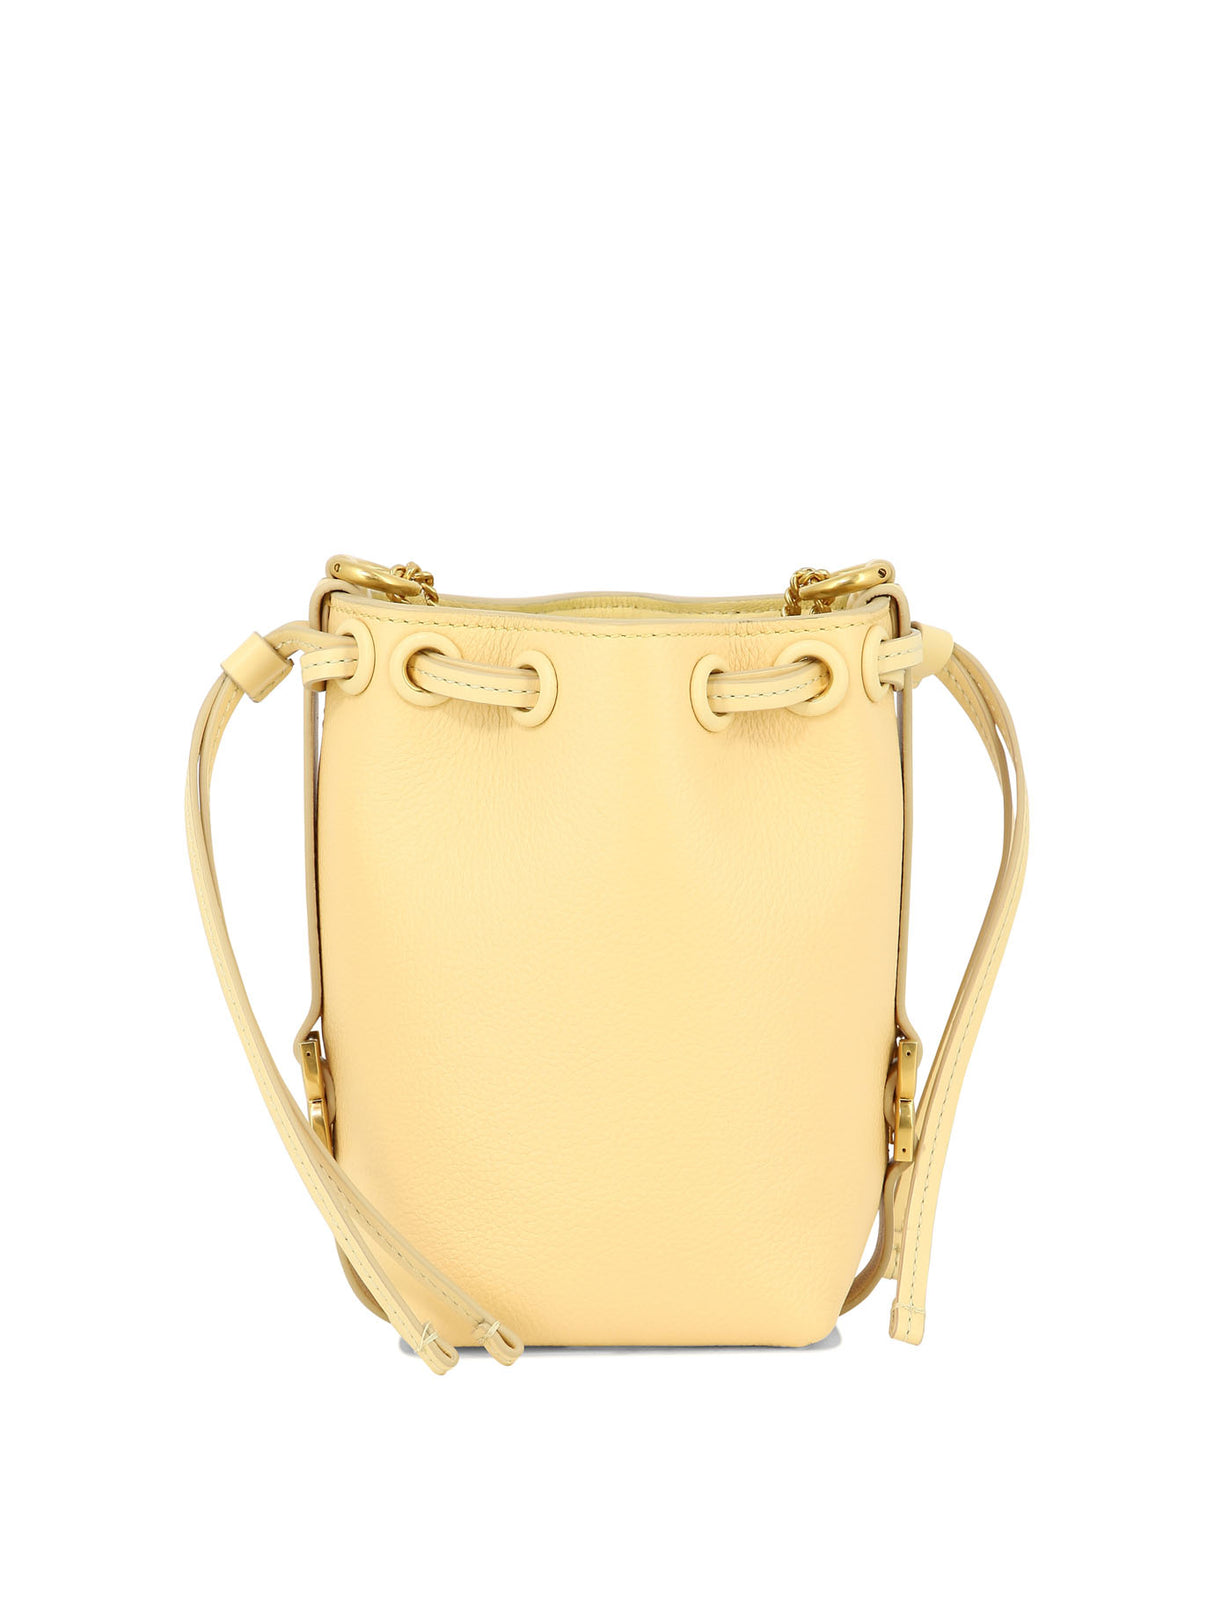 الحقيبة اليدوية الميكرو مارسي الصفراء للنساء - تصميم مستوحى من السبعينيات